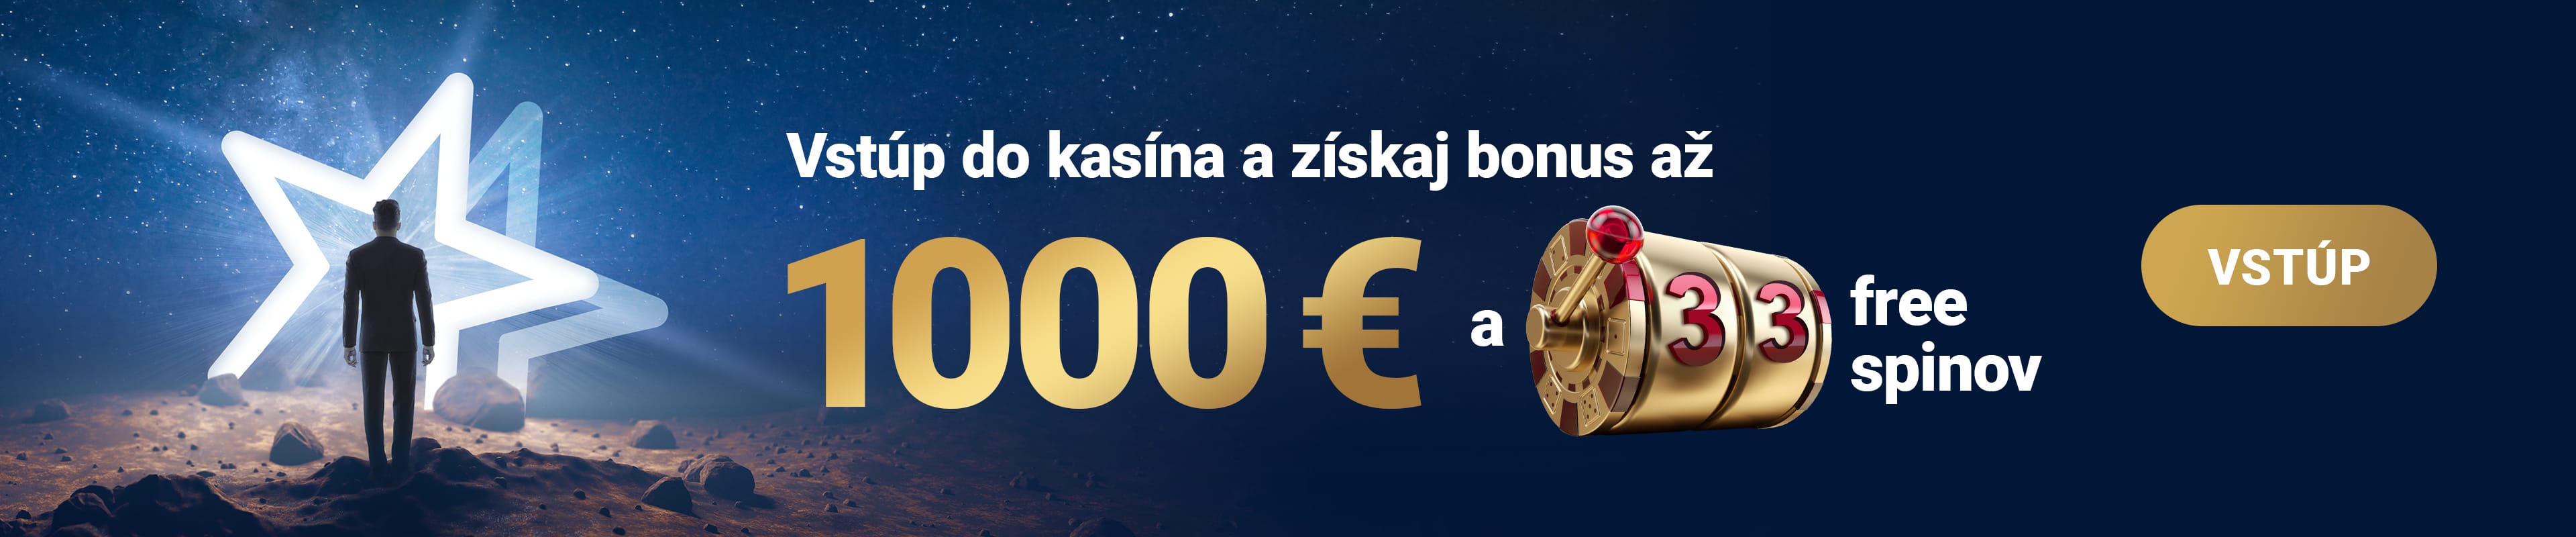 Uvítací bonus 100% do 1000 € + 33 free spinov